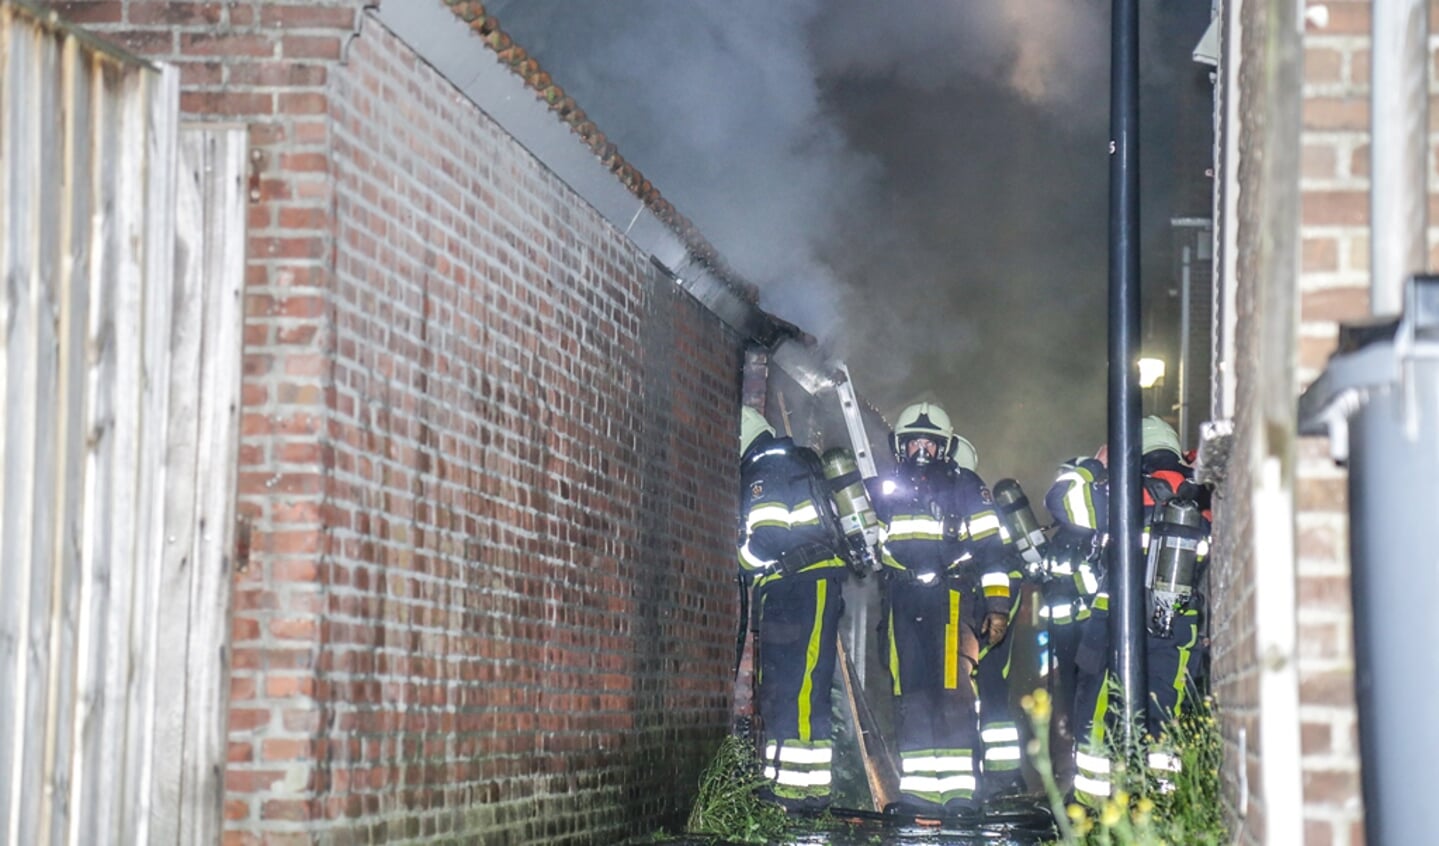 De brand zorgde voor veel rookontwikkeling ( Foto's : Maickel Keijzers / HendriksMultimedia )